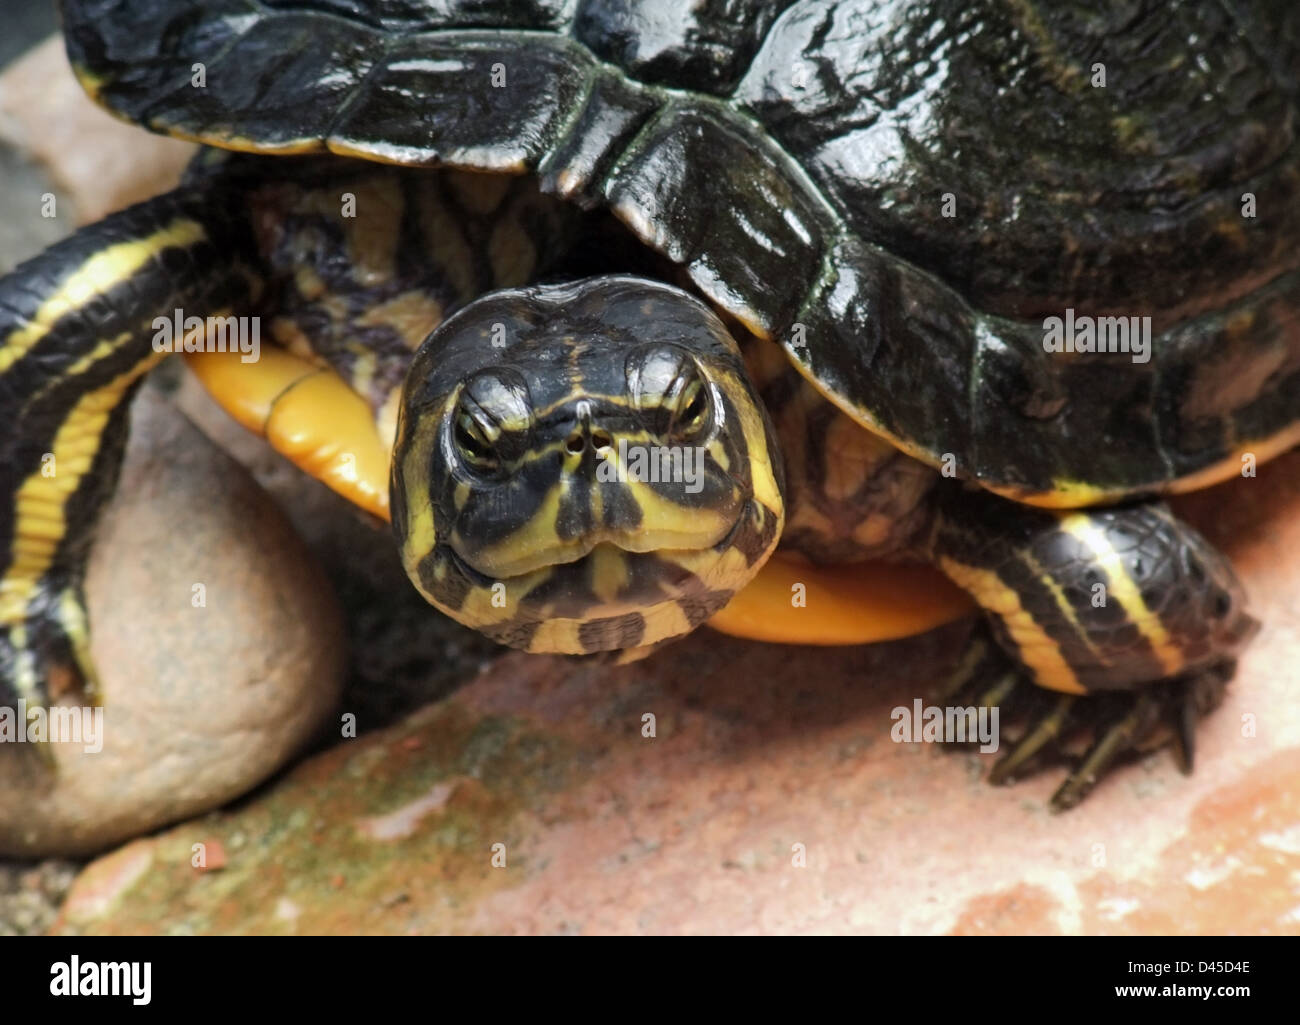 Lateralmente il ritratto di una tartaruga di acqua dolce in atmosfera pietroso Foto Stock